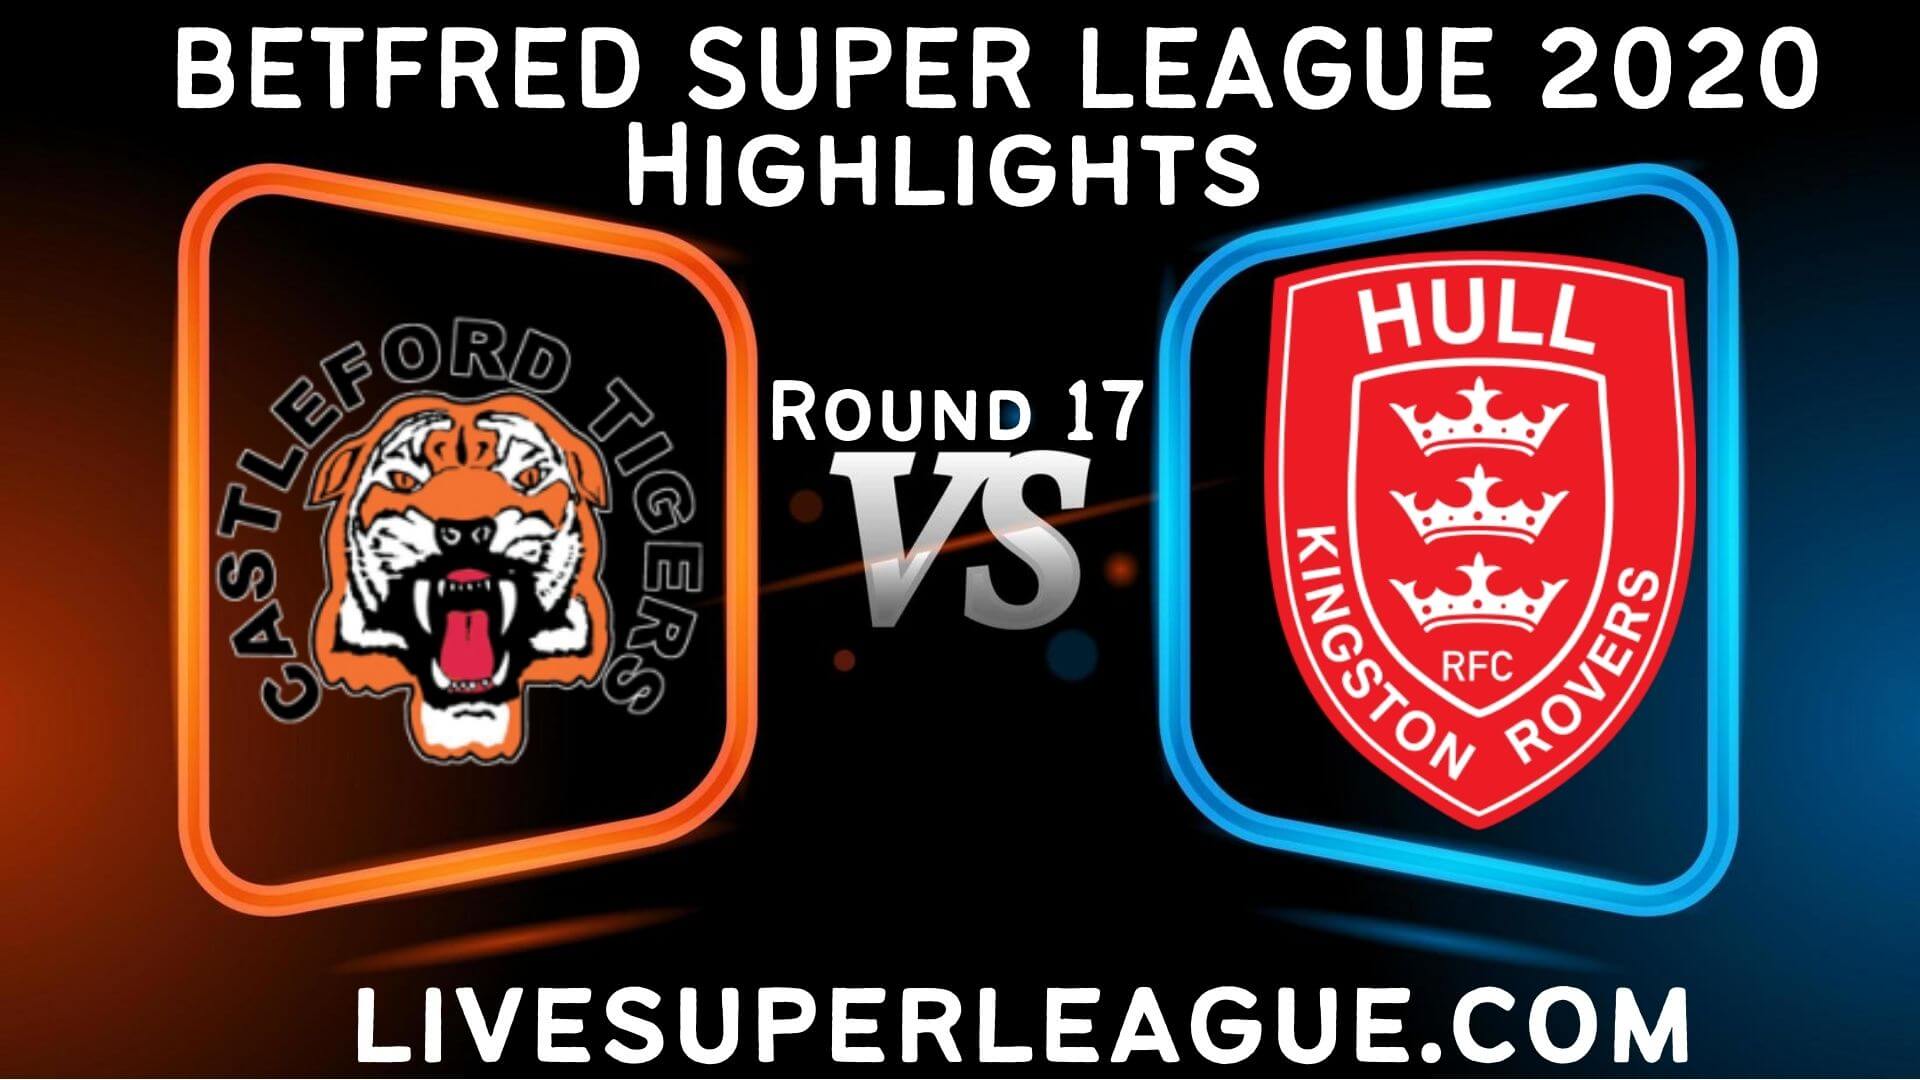 Castleford Tigers vs Hull KR Highlights 2020 Rd 17